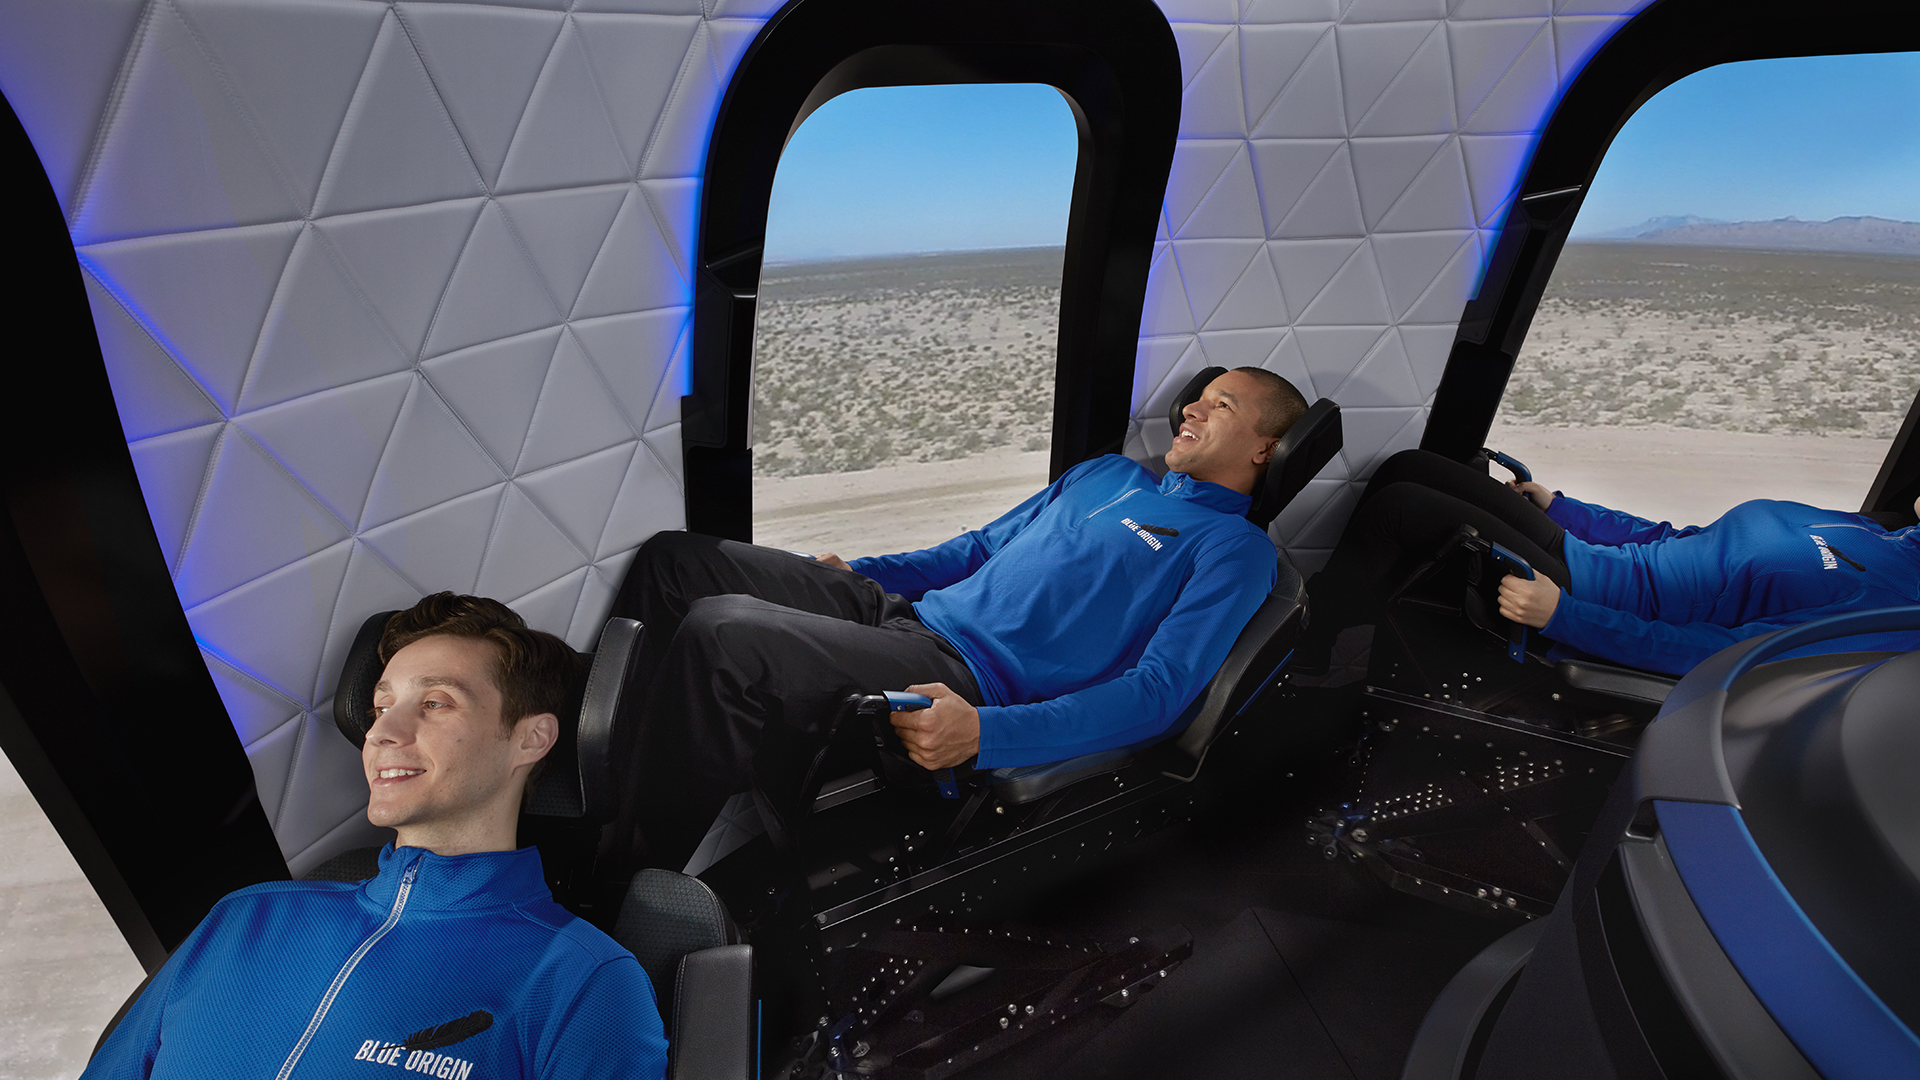 Blue Origin จะปล่อยแคปซูลอวกาศด้วยจรวด New Shepard อีกครั้งเพื่อตรวจสอบก่อนส่งนักบินจริง